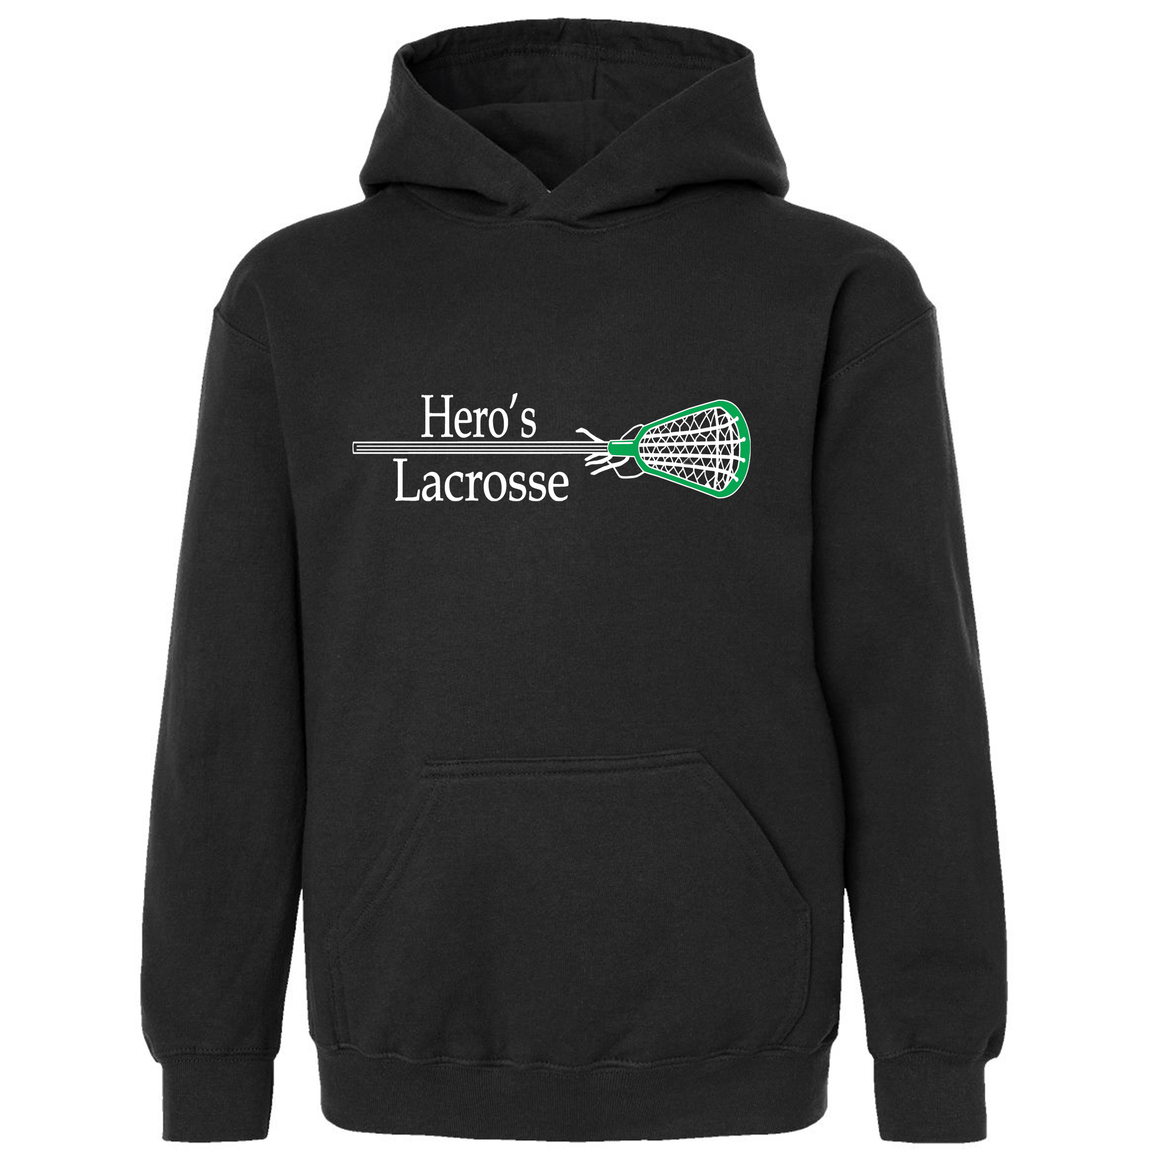 Hero's Lacrosse Youth Hooded Sweatshirt